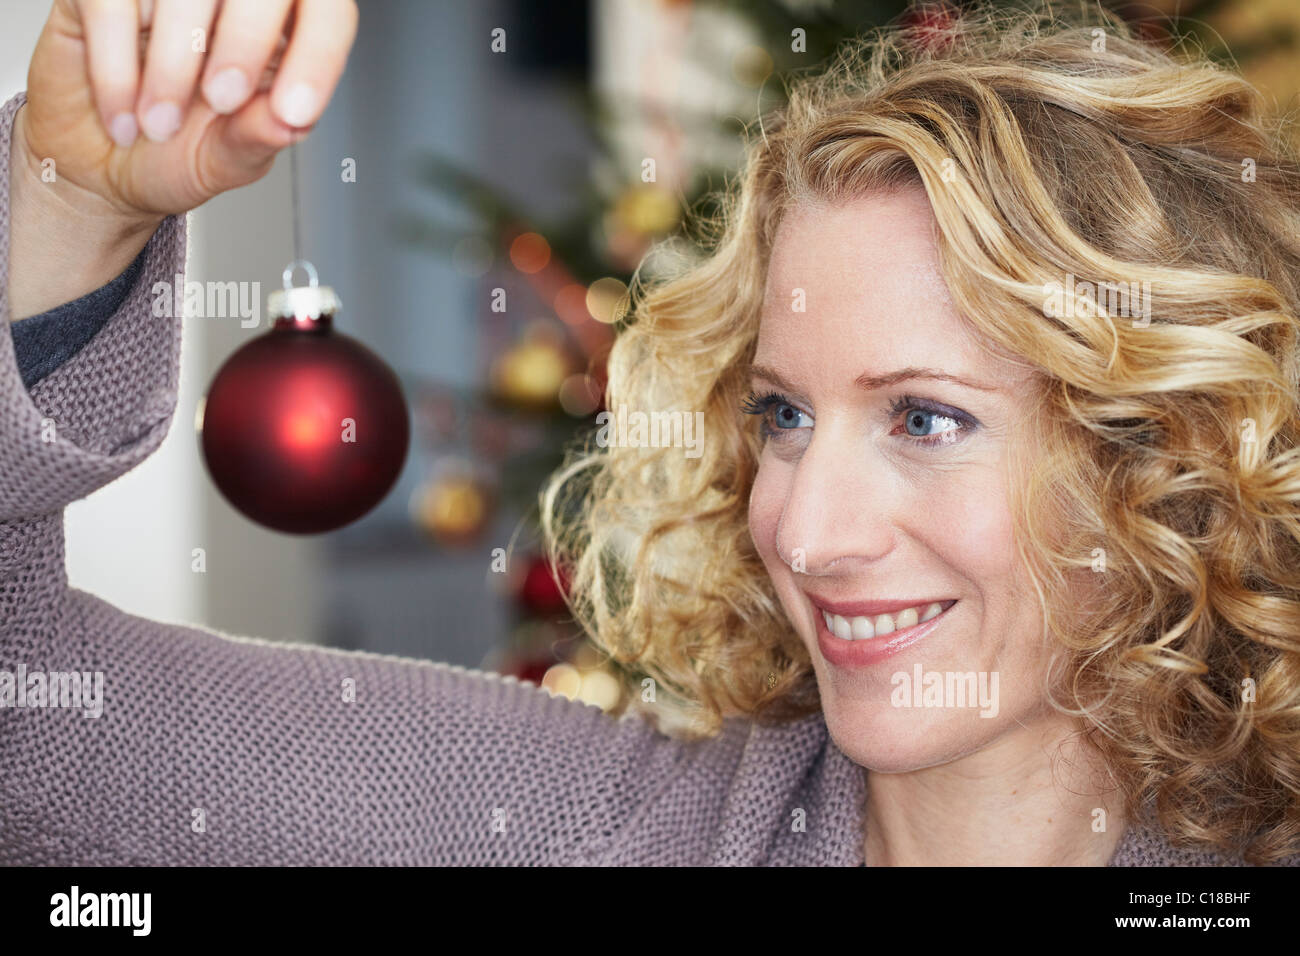 Woman looking at Christmas ball Stock Photo